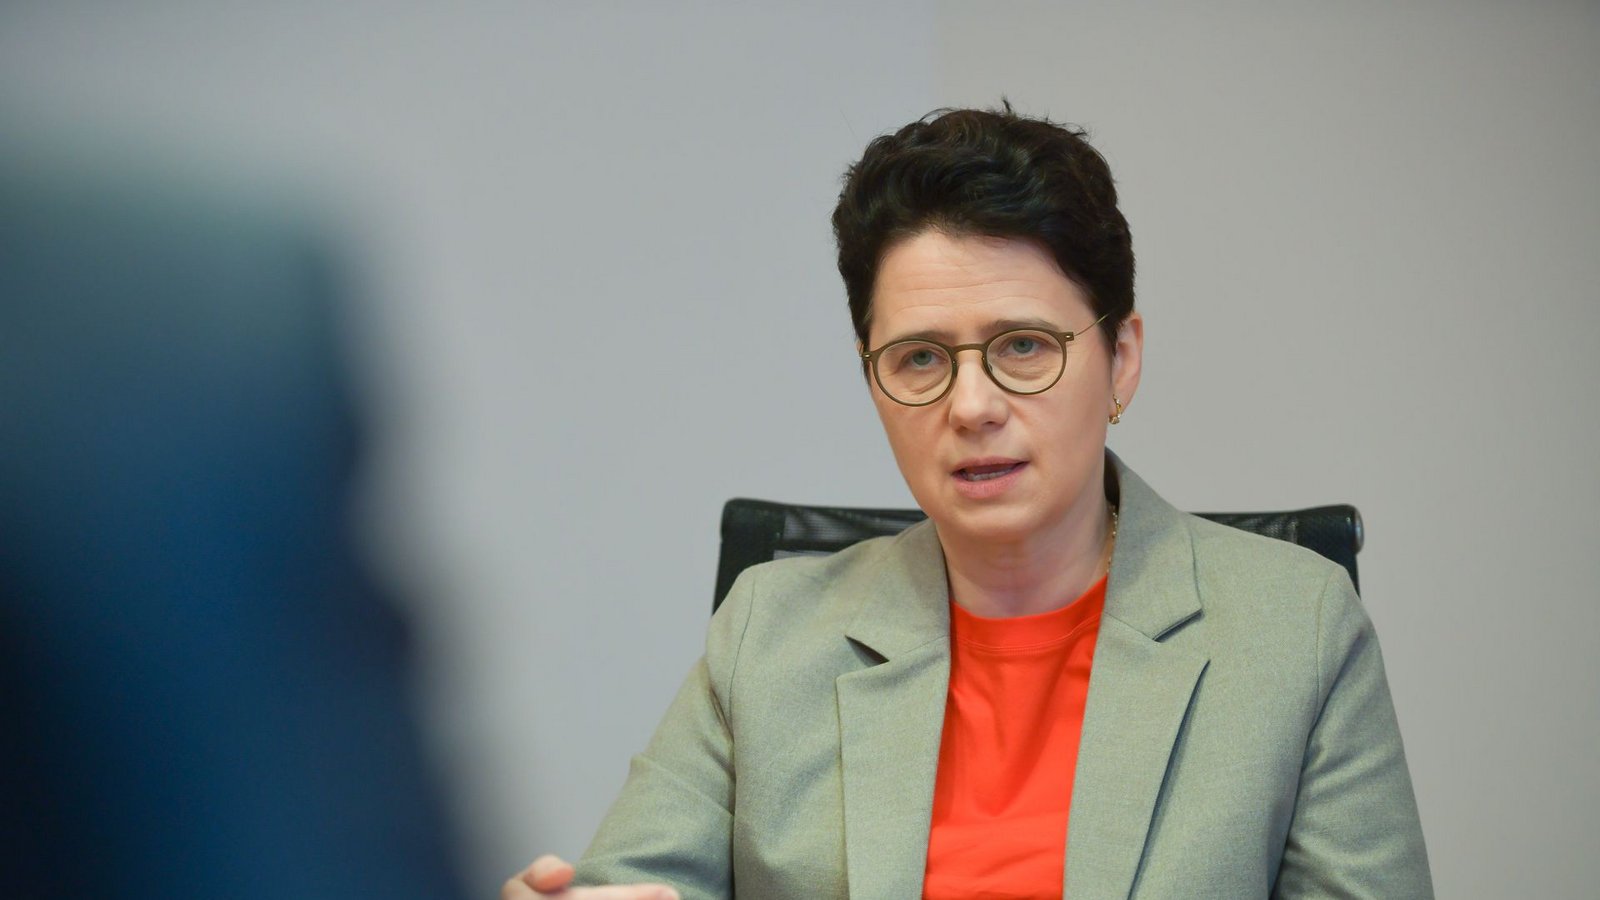 Justizministerin Marion Gentges lenkt ein.Foto: Lichtgut/Max Kovalenko